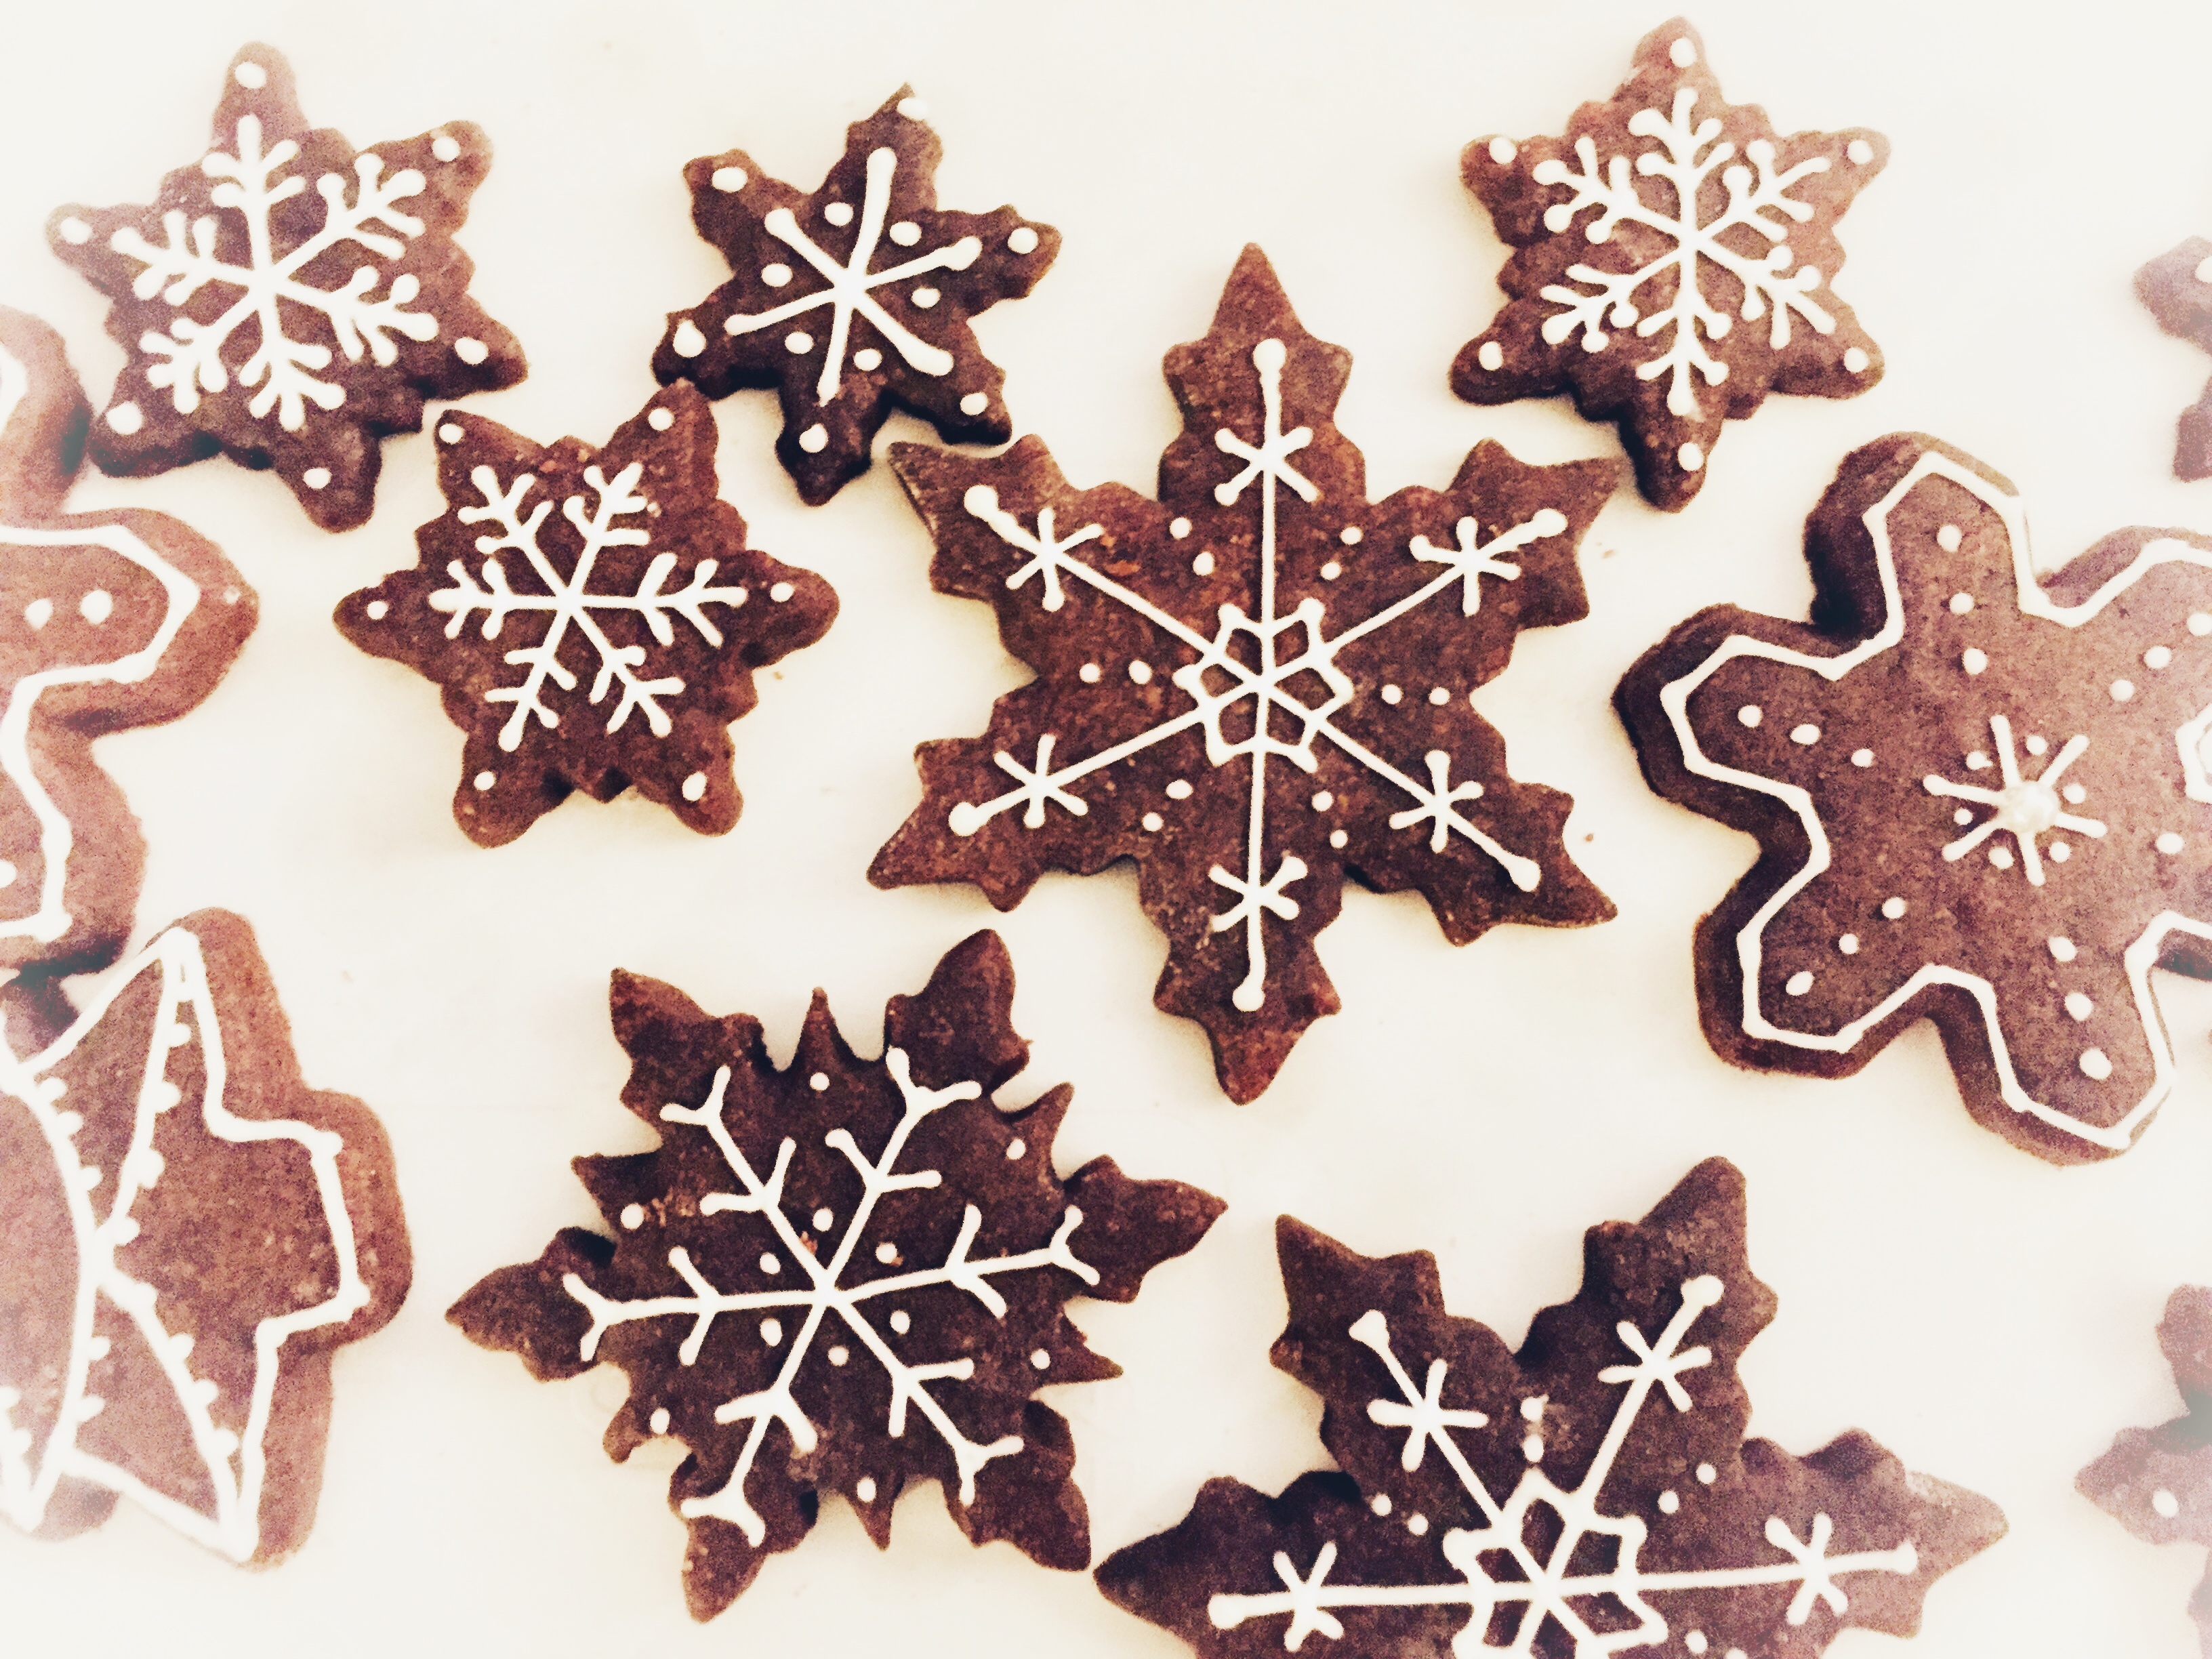 Biscotti Di Natale Decorati Immagini.Biscotti Di Natale Sablee Al Cacao Decorati Con Ghiaccia Reale Master Of Cakes